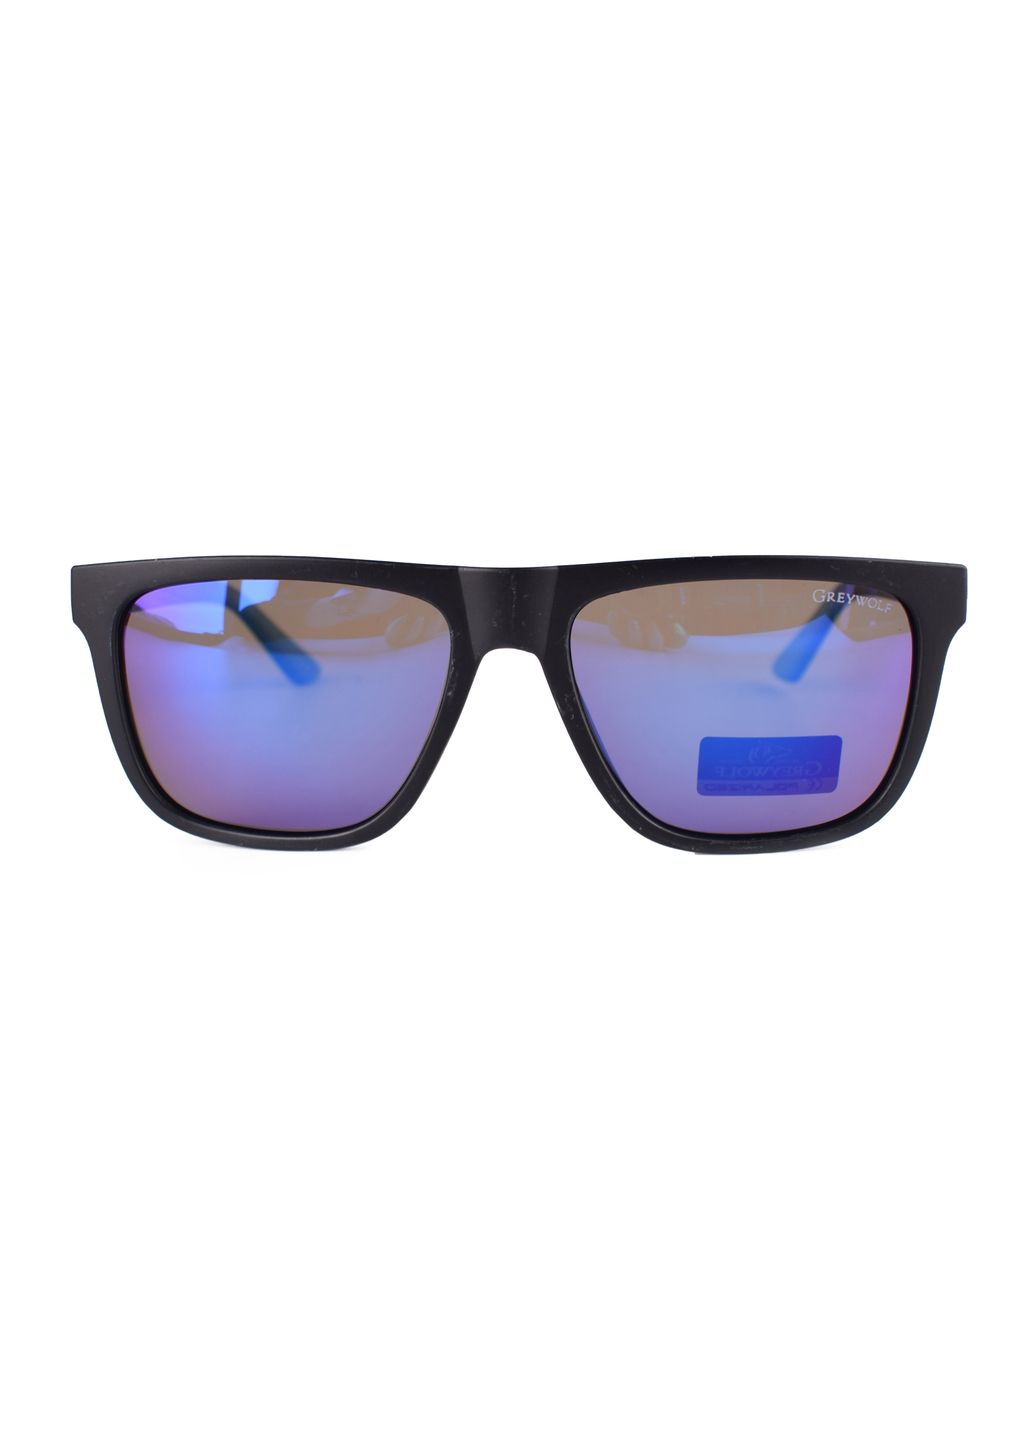 Купить Черные мужские солнцезащитные очки Gray Wolf с поряризацией GW5112 121013 в интернет-магазине